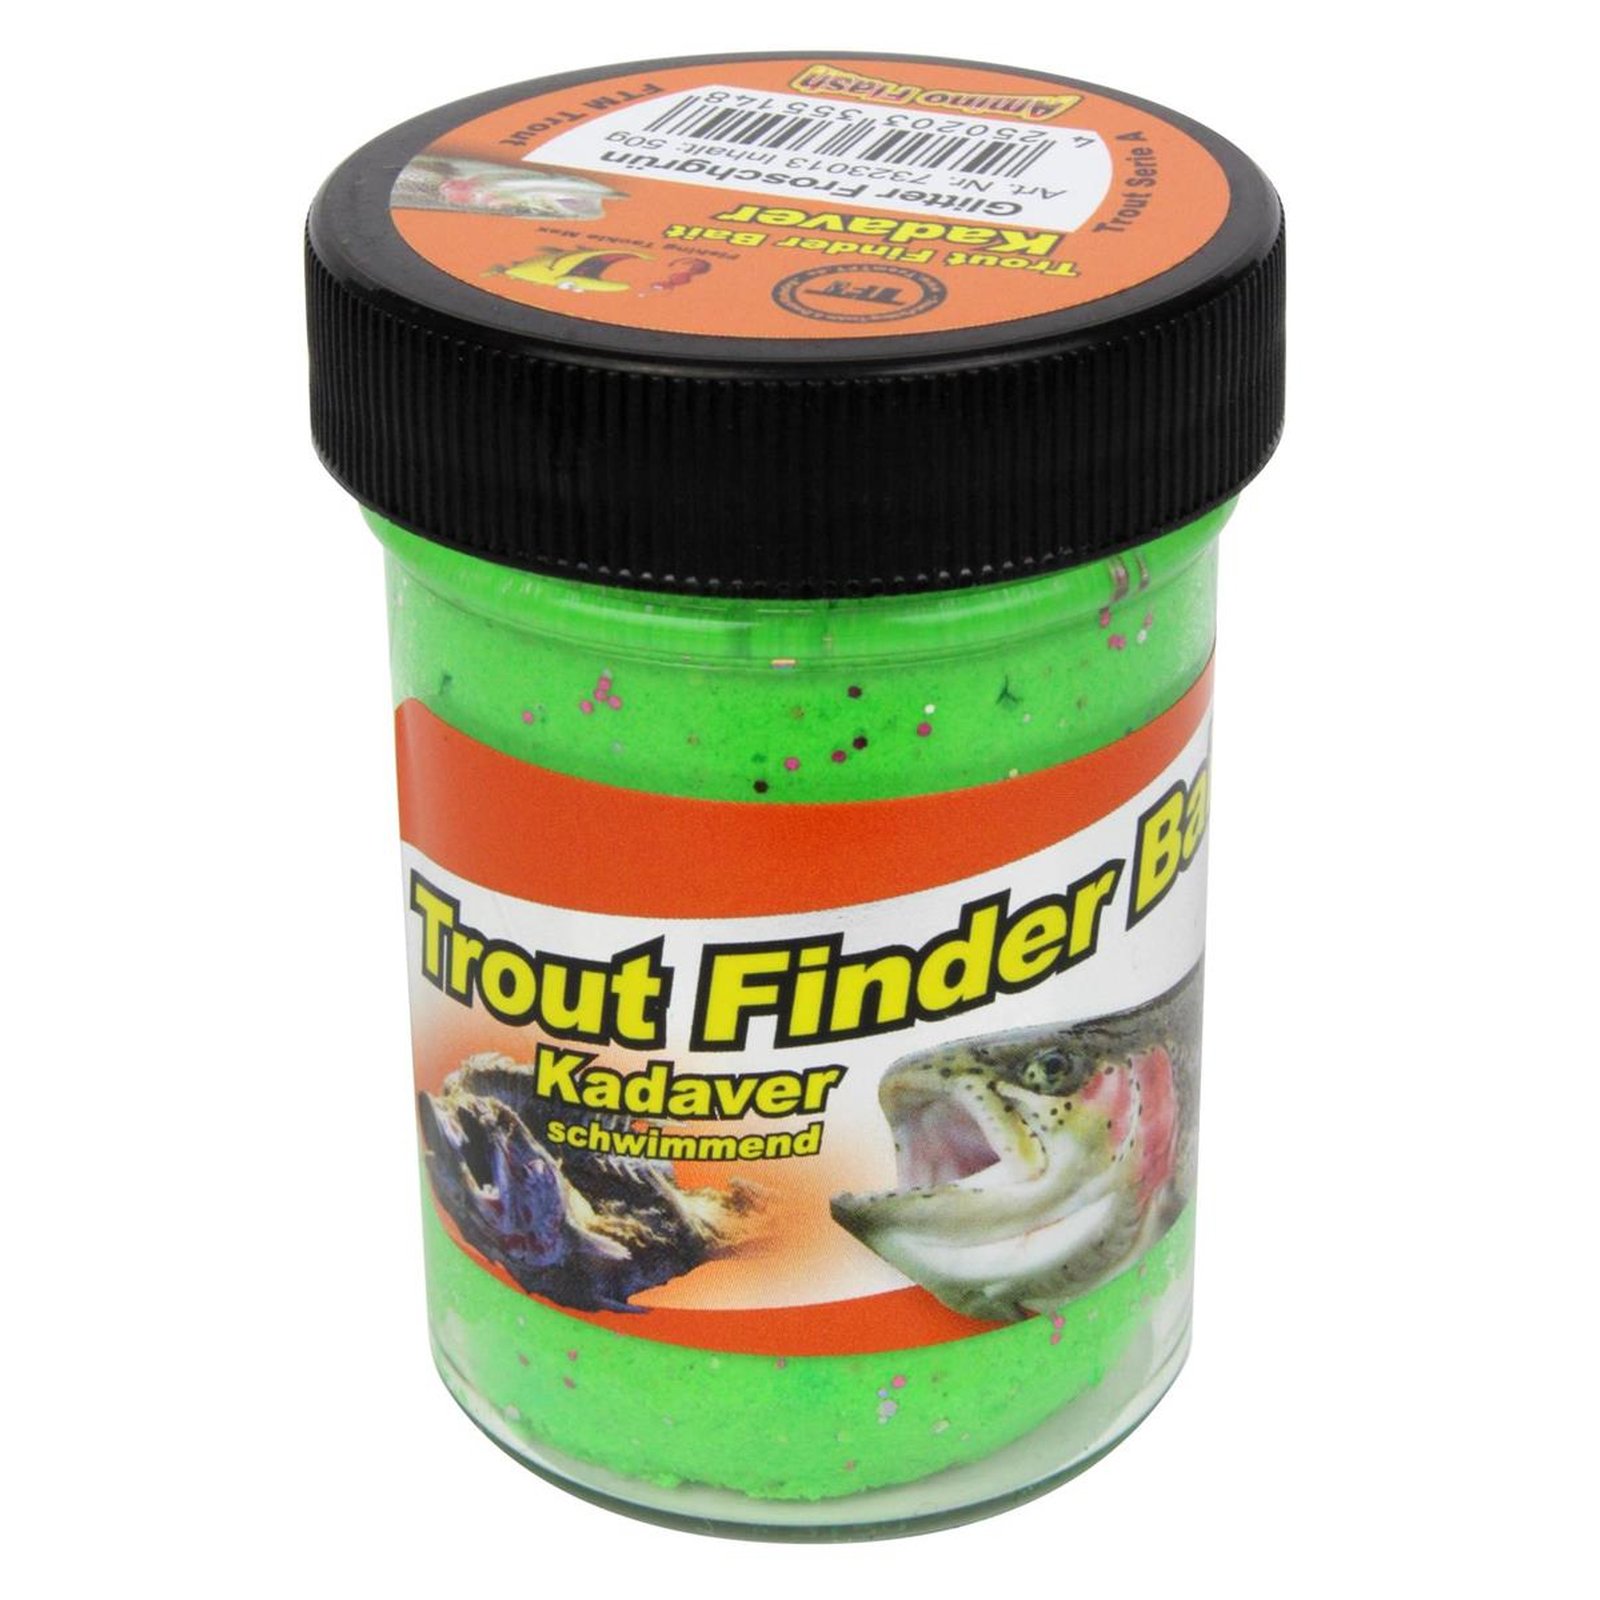 FTM Trout Finder Bait Kadaver Glitter Froschgrn schwimmend 50g